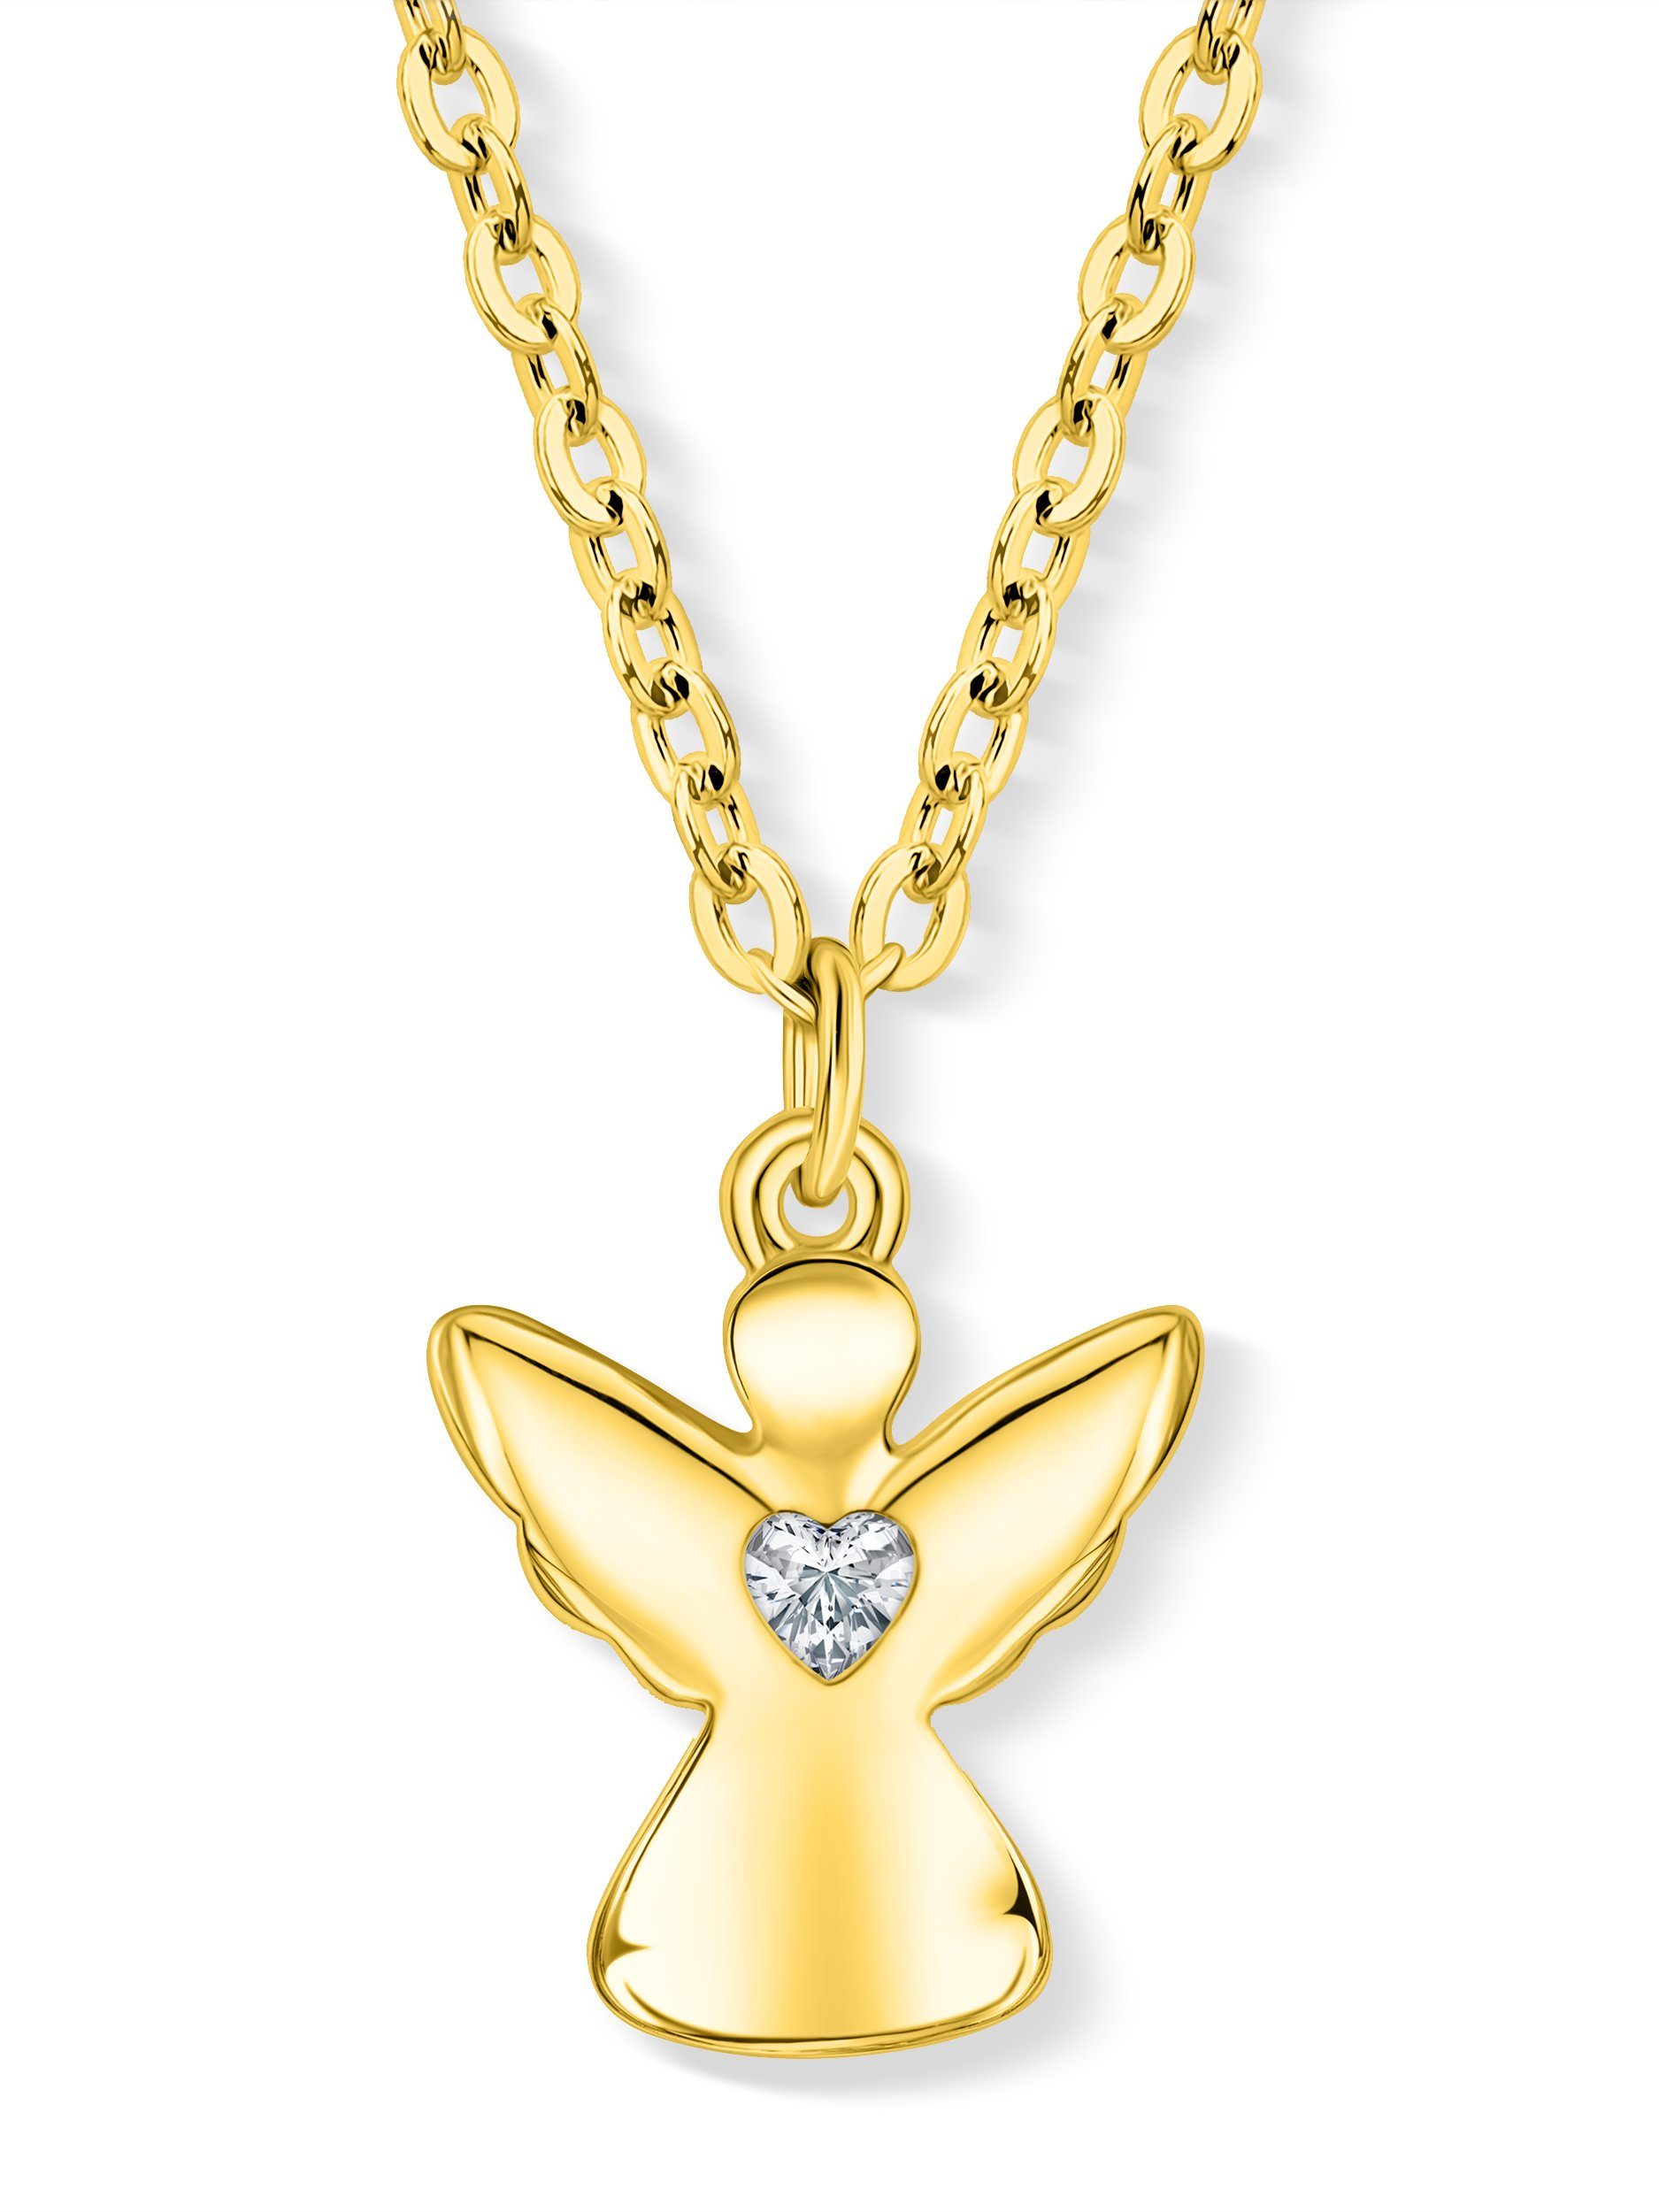 VIASOUL Kette mit Anhänger Engel Glanz Gold Mädchen Herz, Kinder-Schmuck, mit Kette Schutzengel für stahlender Halskette